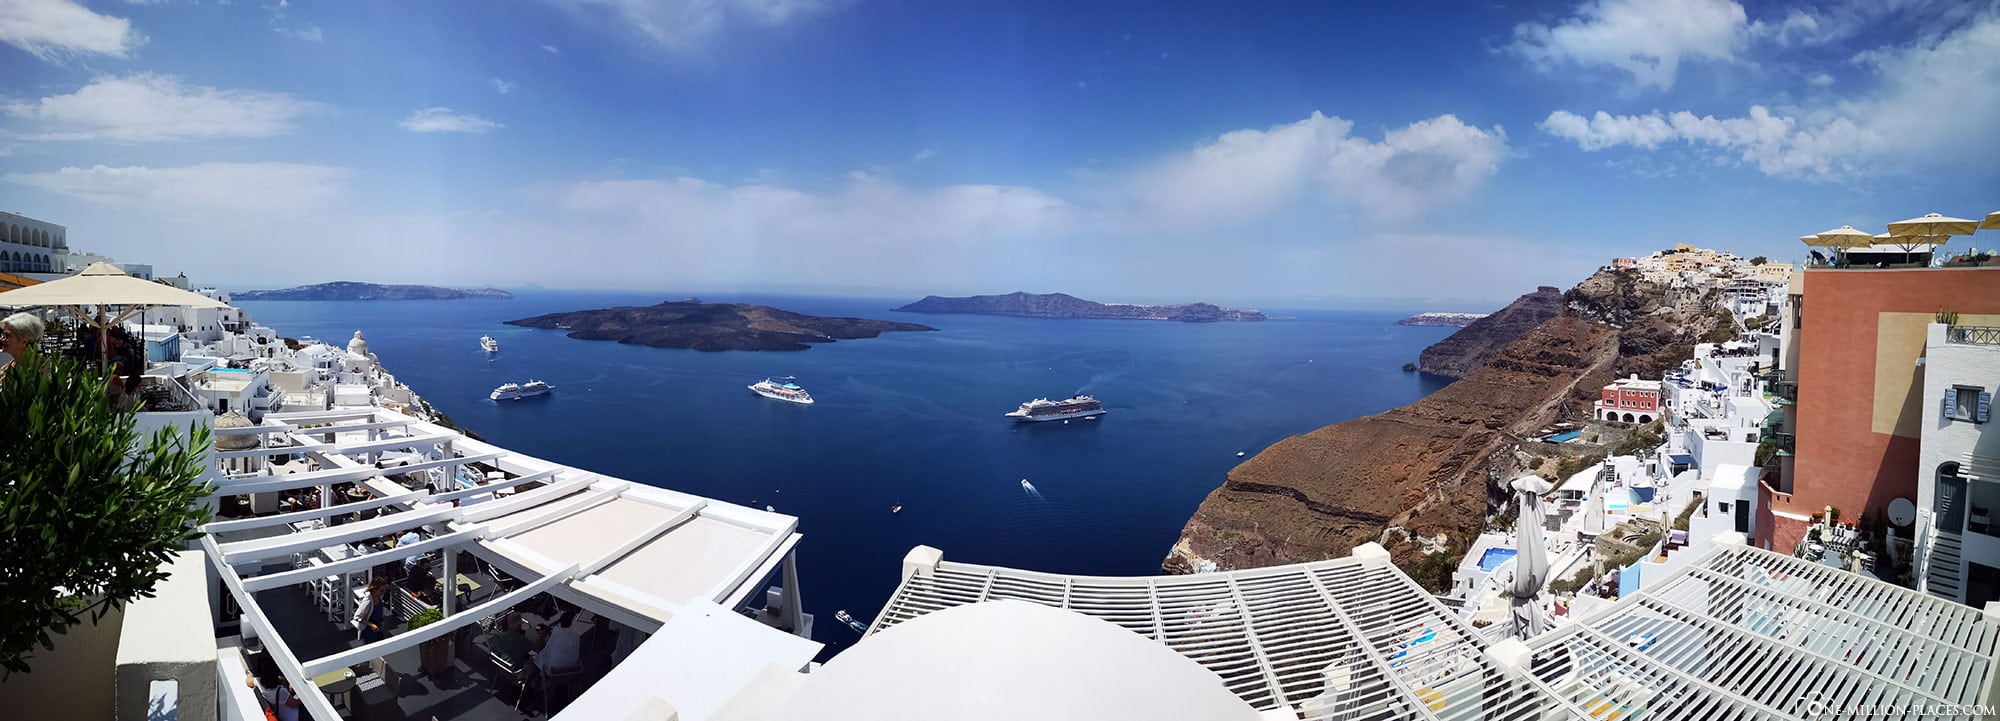 Panoramabild, Fira, Caldera, Thira, Santorini, Griechische Inseln, Griechenland, Kreuzfahrt, Reisebericht